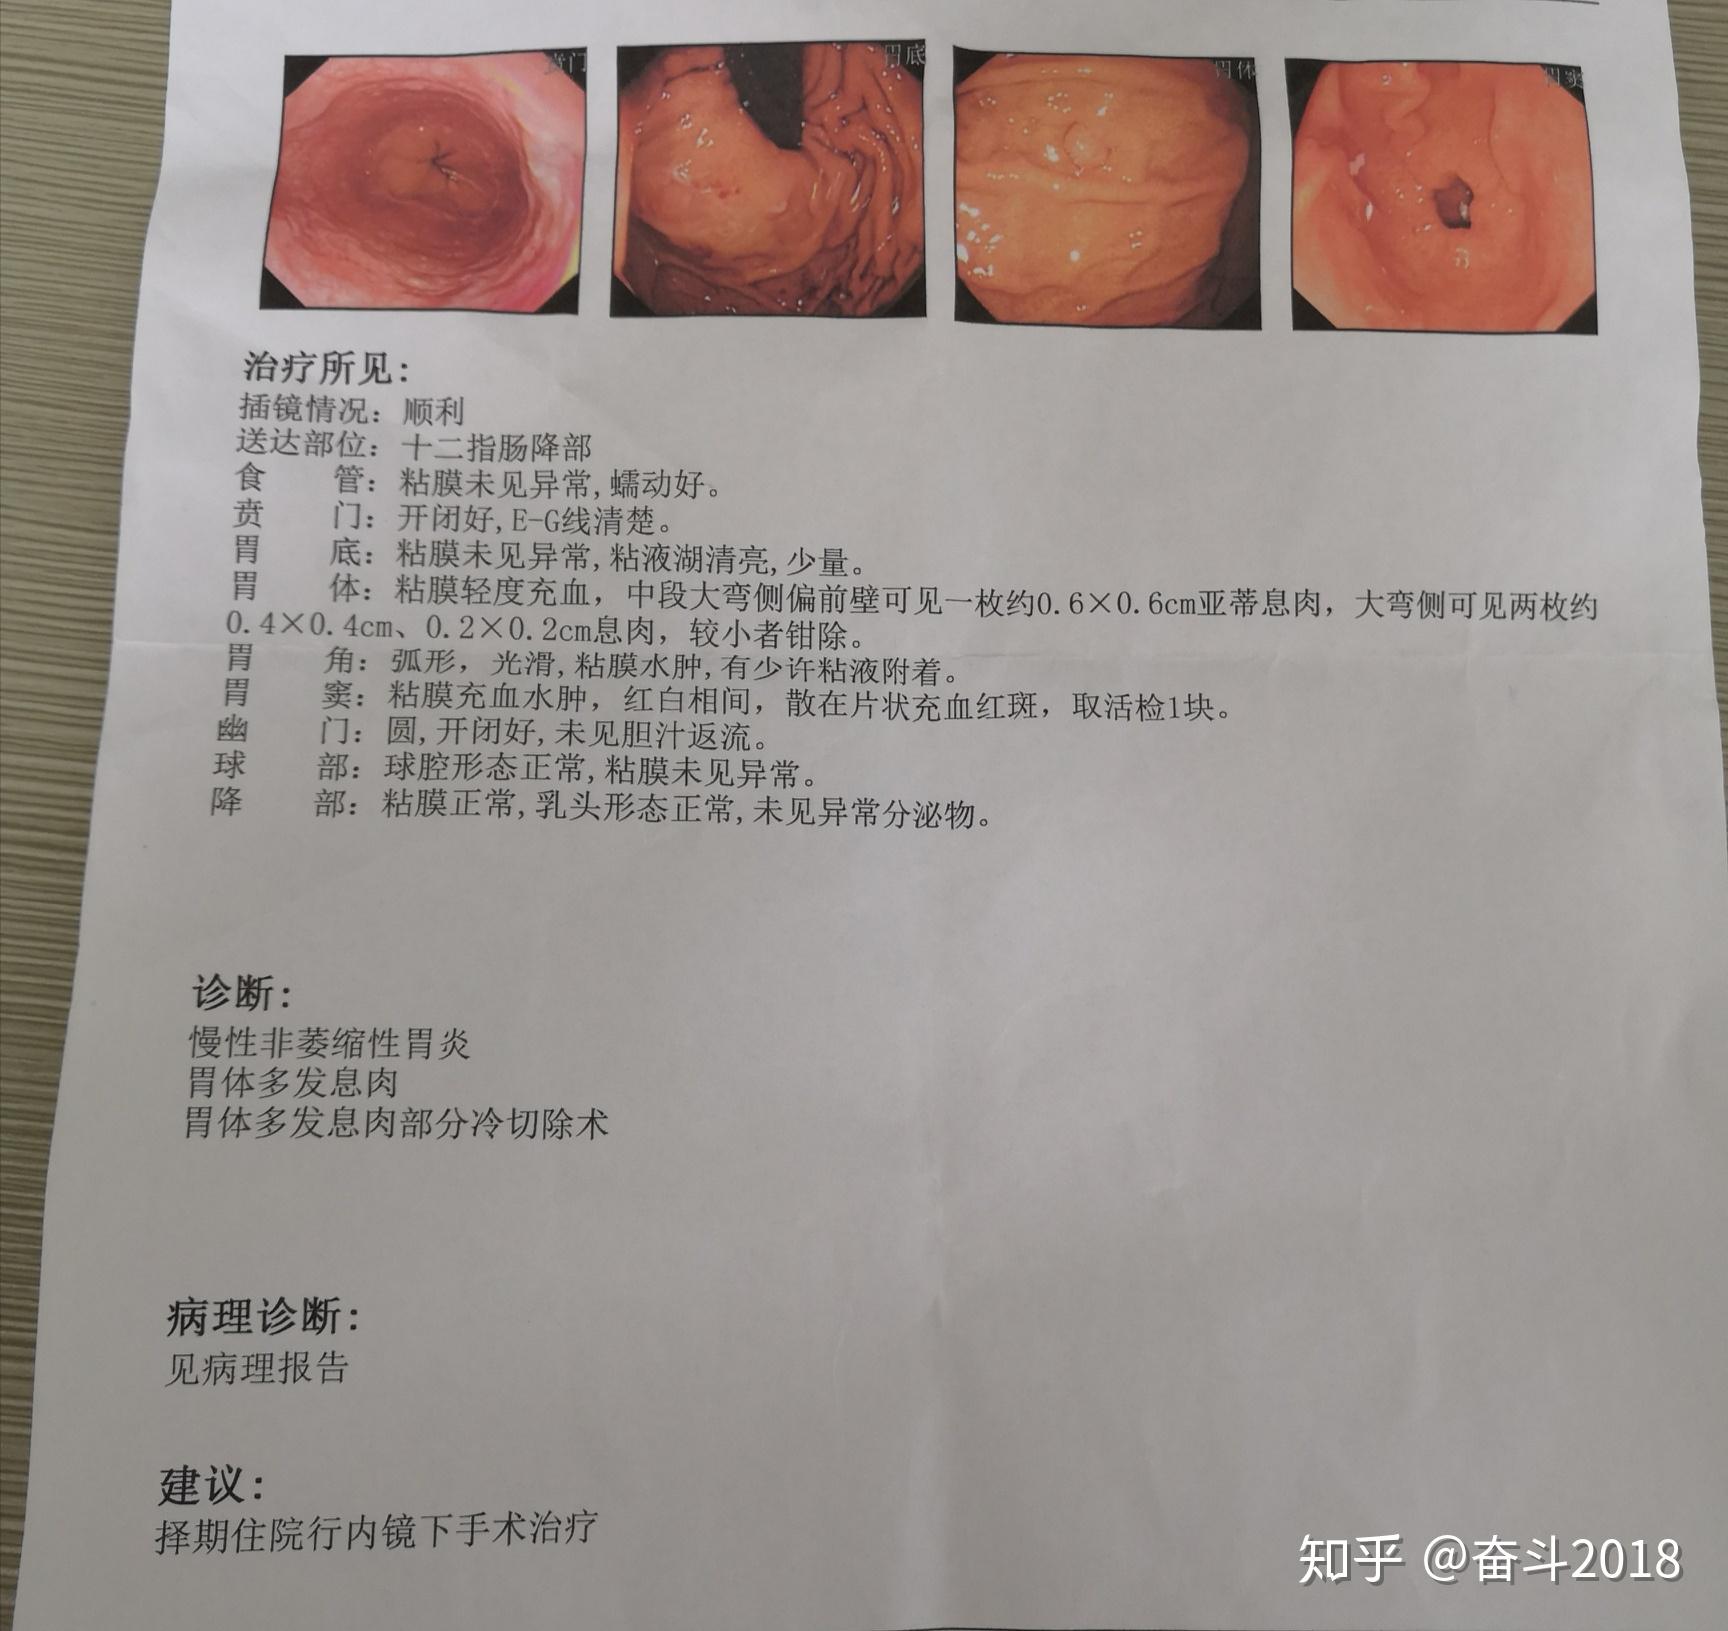 我在北京中日友好医院看胃病的经历！（2022年） - 知乎